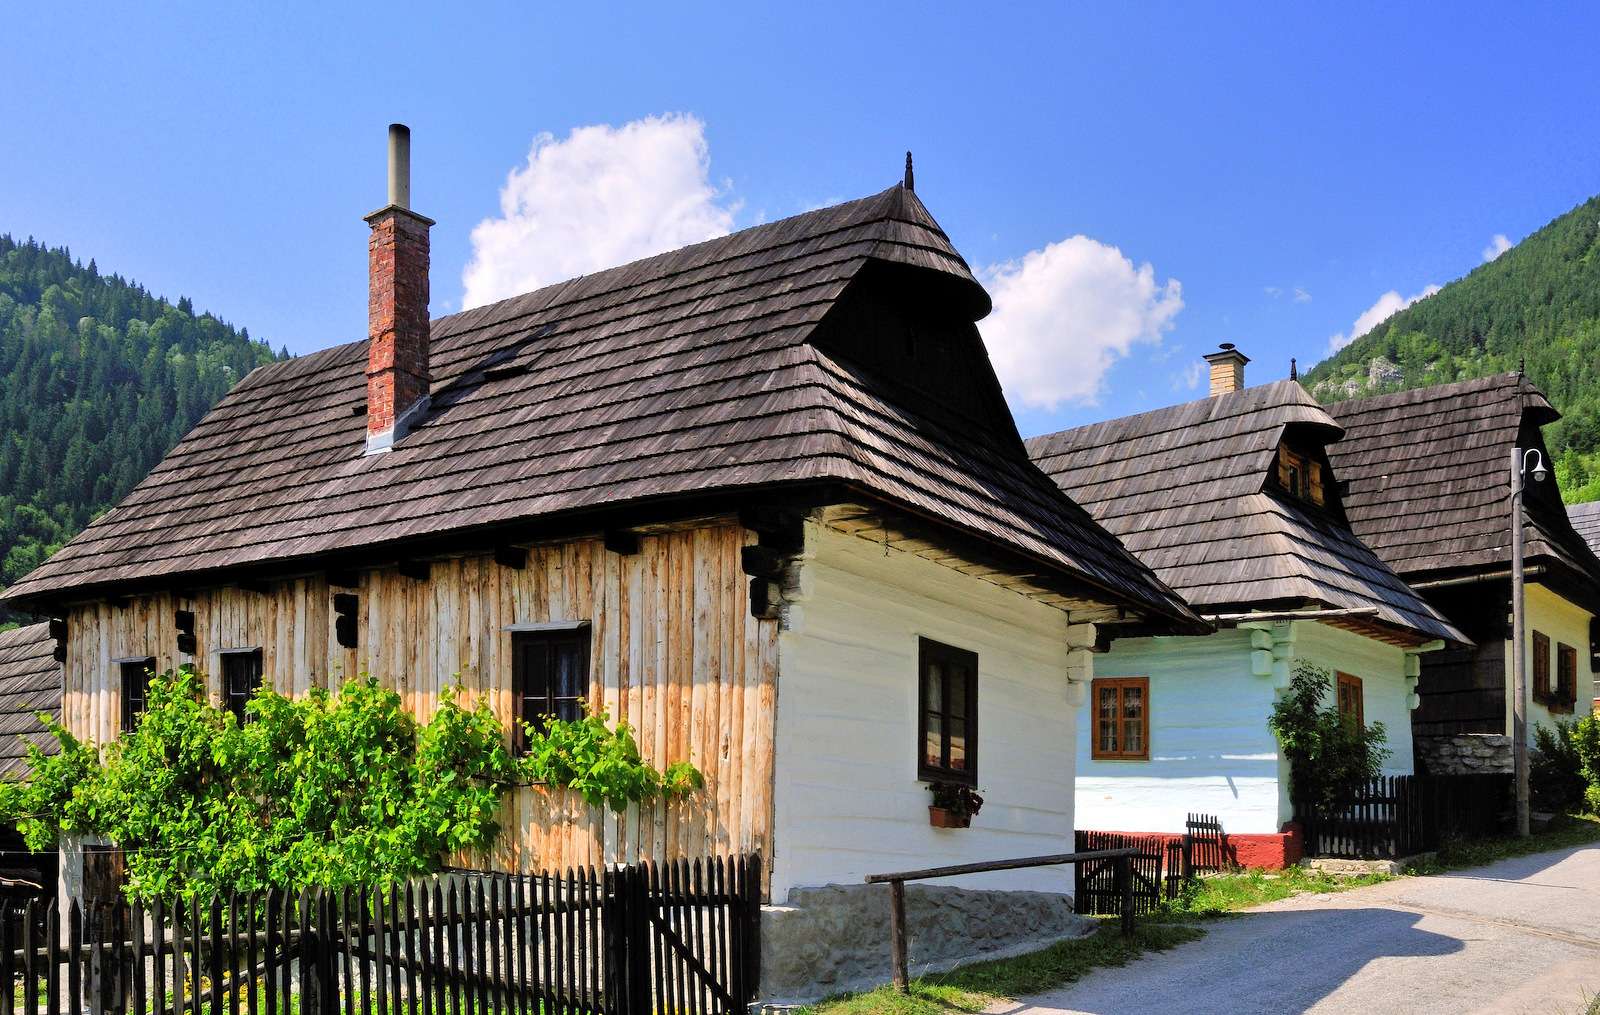 Vlkolínec - ένα ιστορικό χωριό στη Σλοβακία (υπαίθριο μουσείο) παζλ online